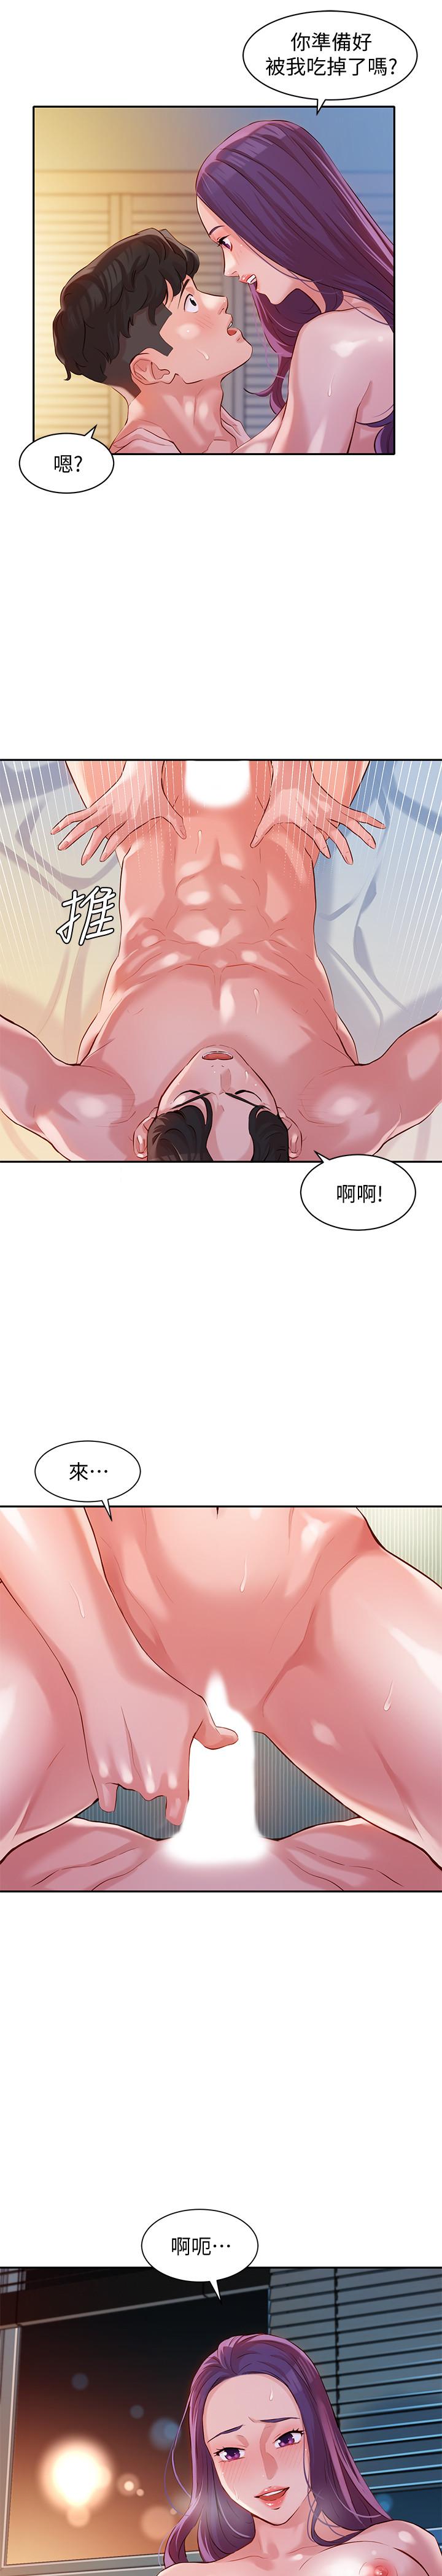 韩国污漫画 女神寫真 第11话-喜欢真枪实弹的感觉 19